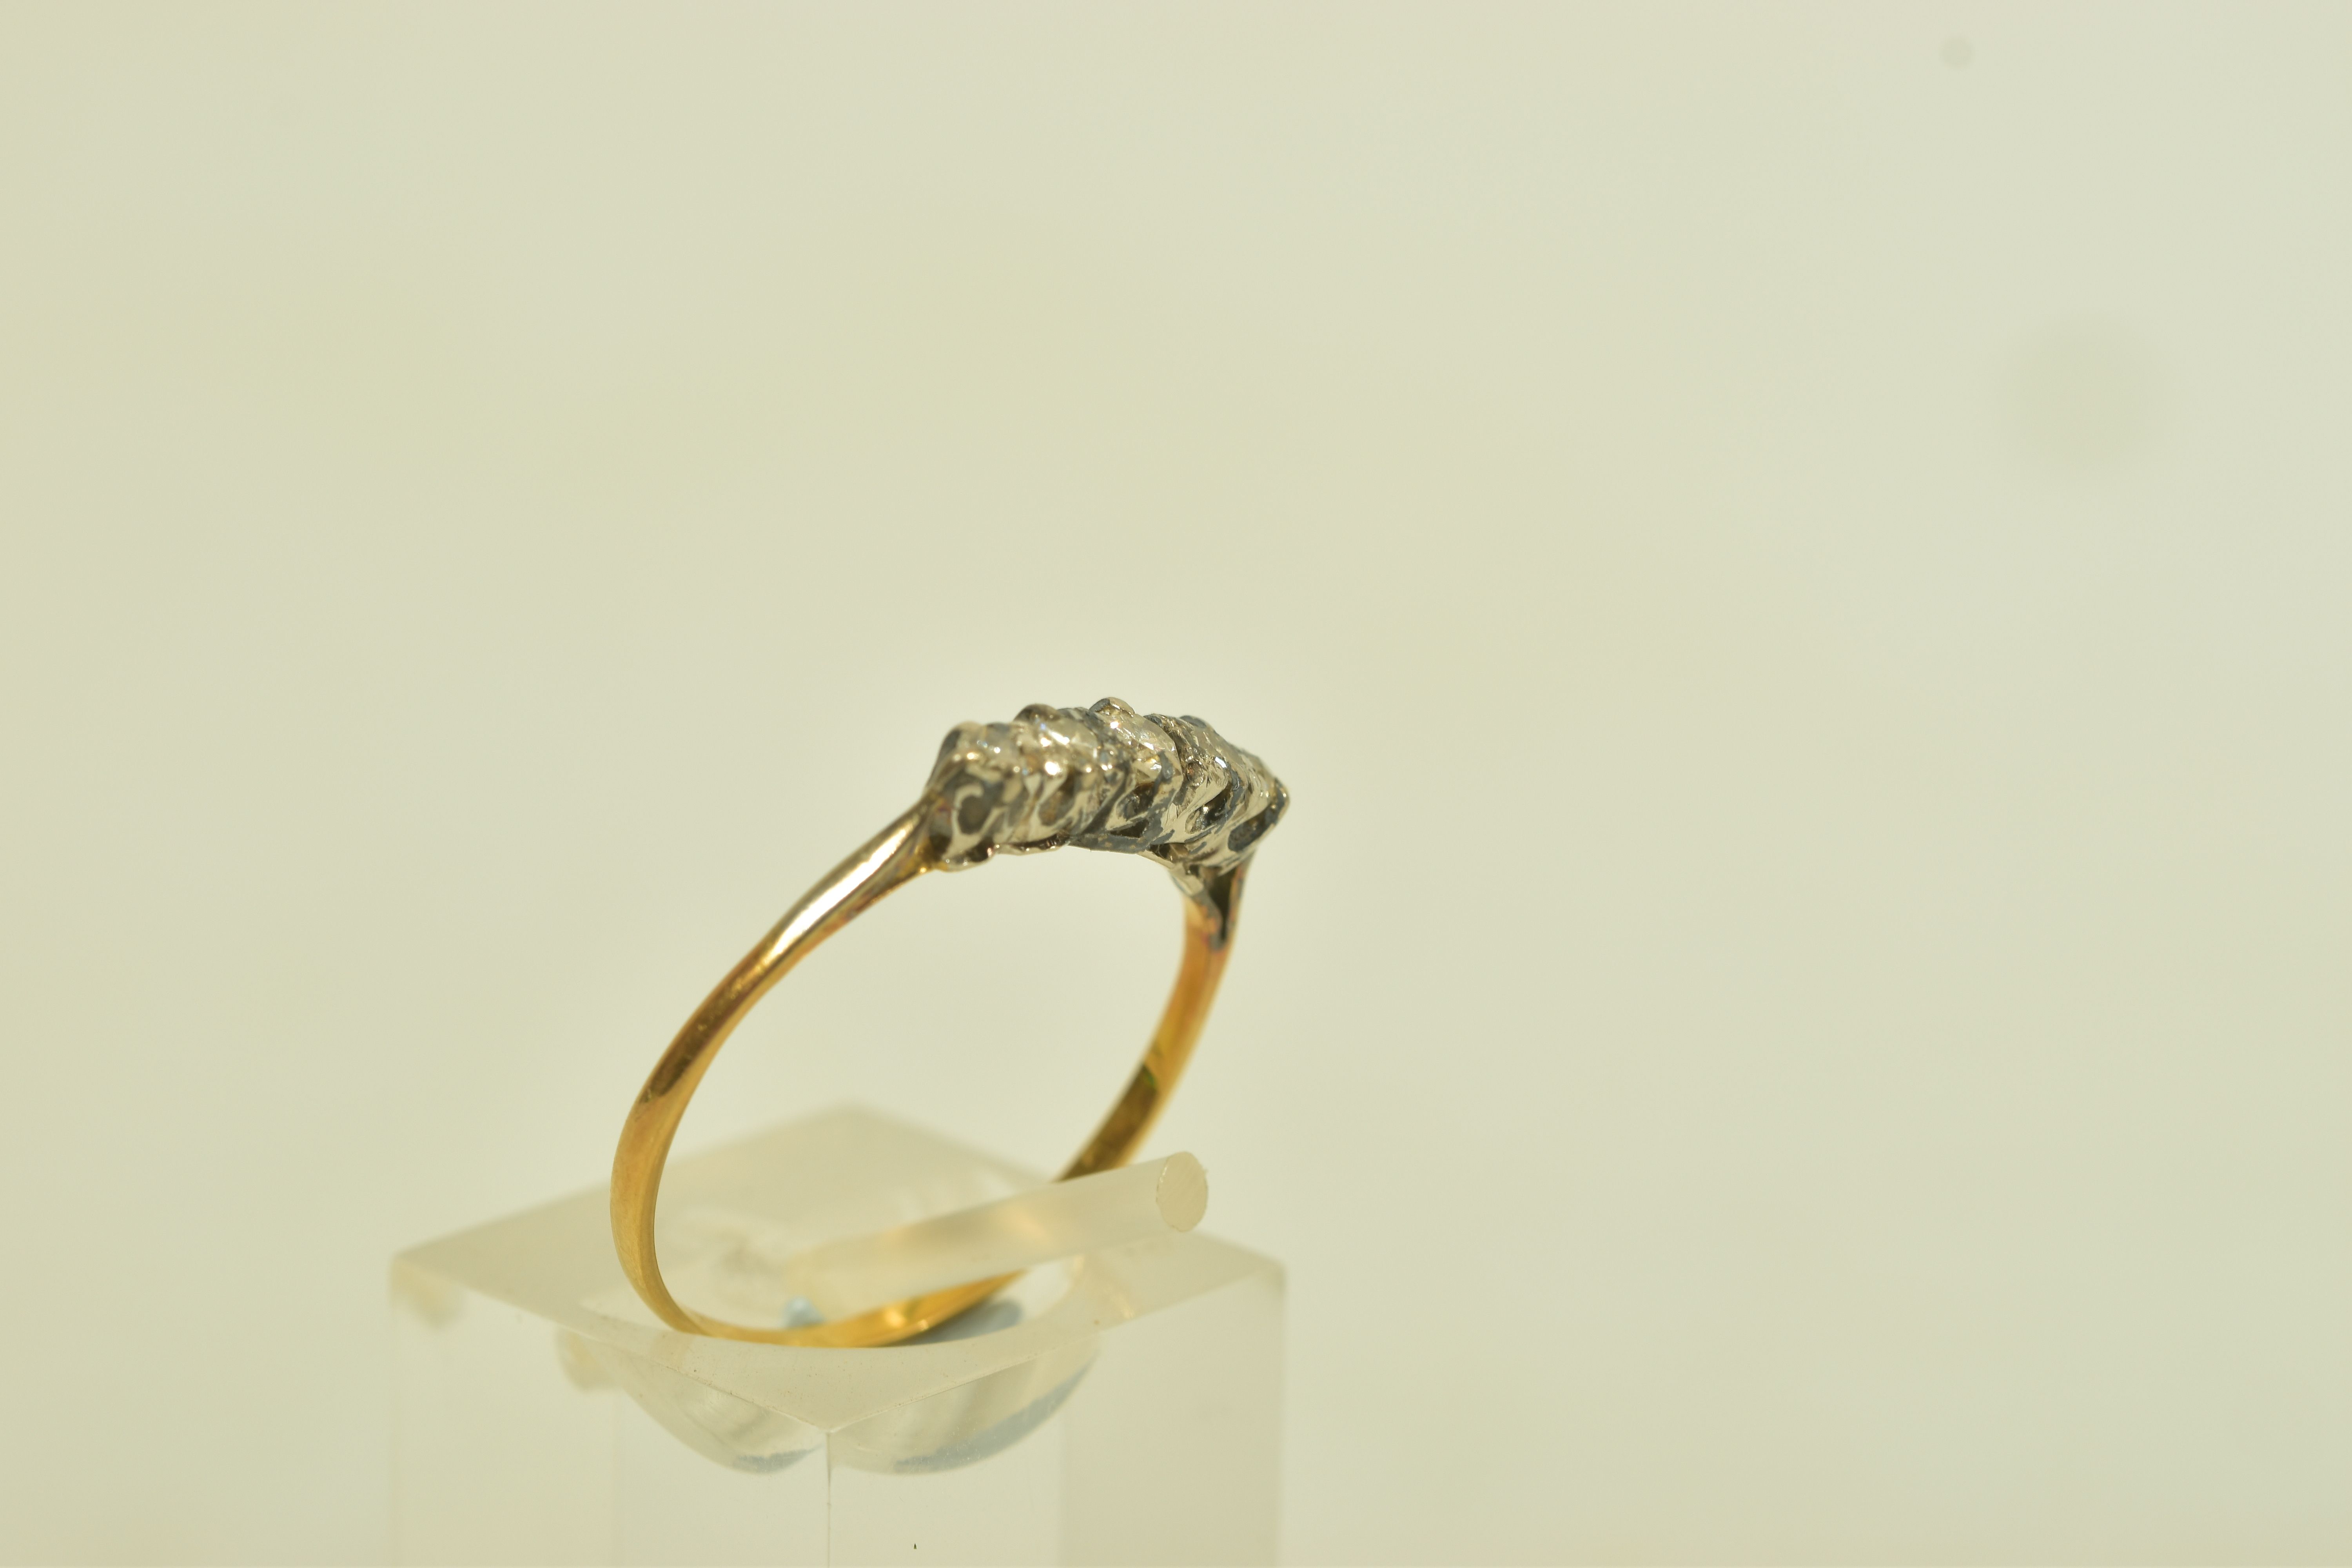 A GOLD DIAMOND FIVE STONE RING, the brilliant cut diamond graduated five stone ring, with openwork